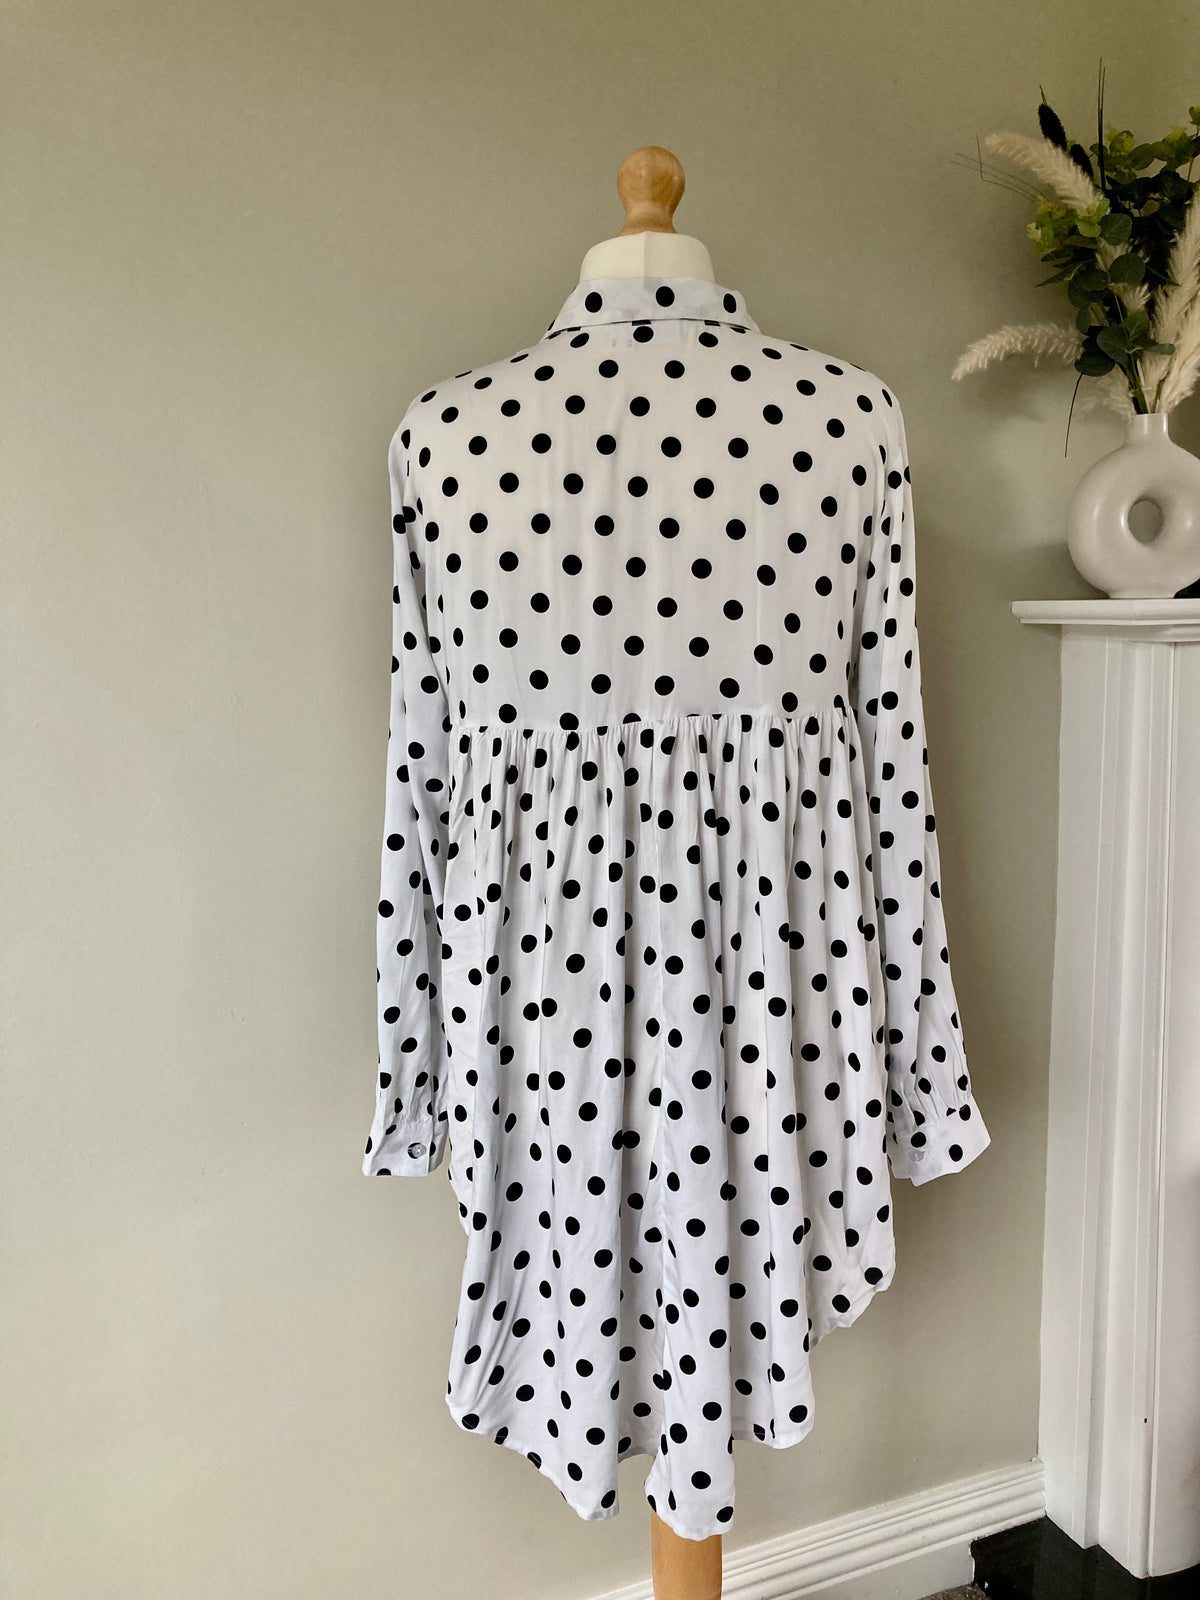 Black & White Polka Dot Shirt by BONPRIX - size 16